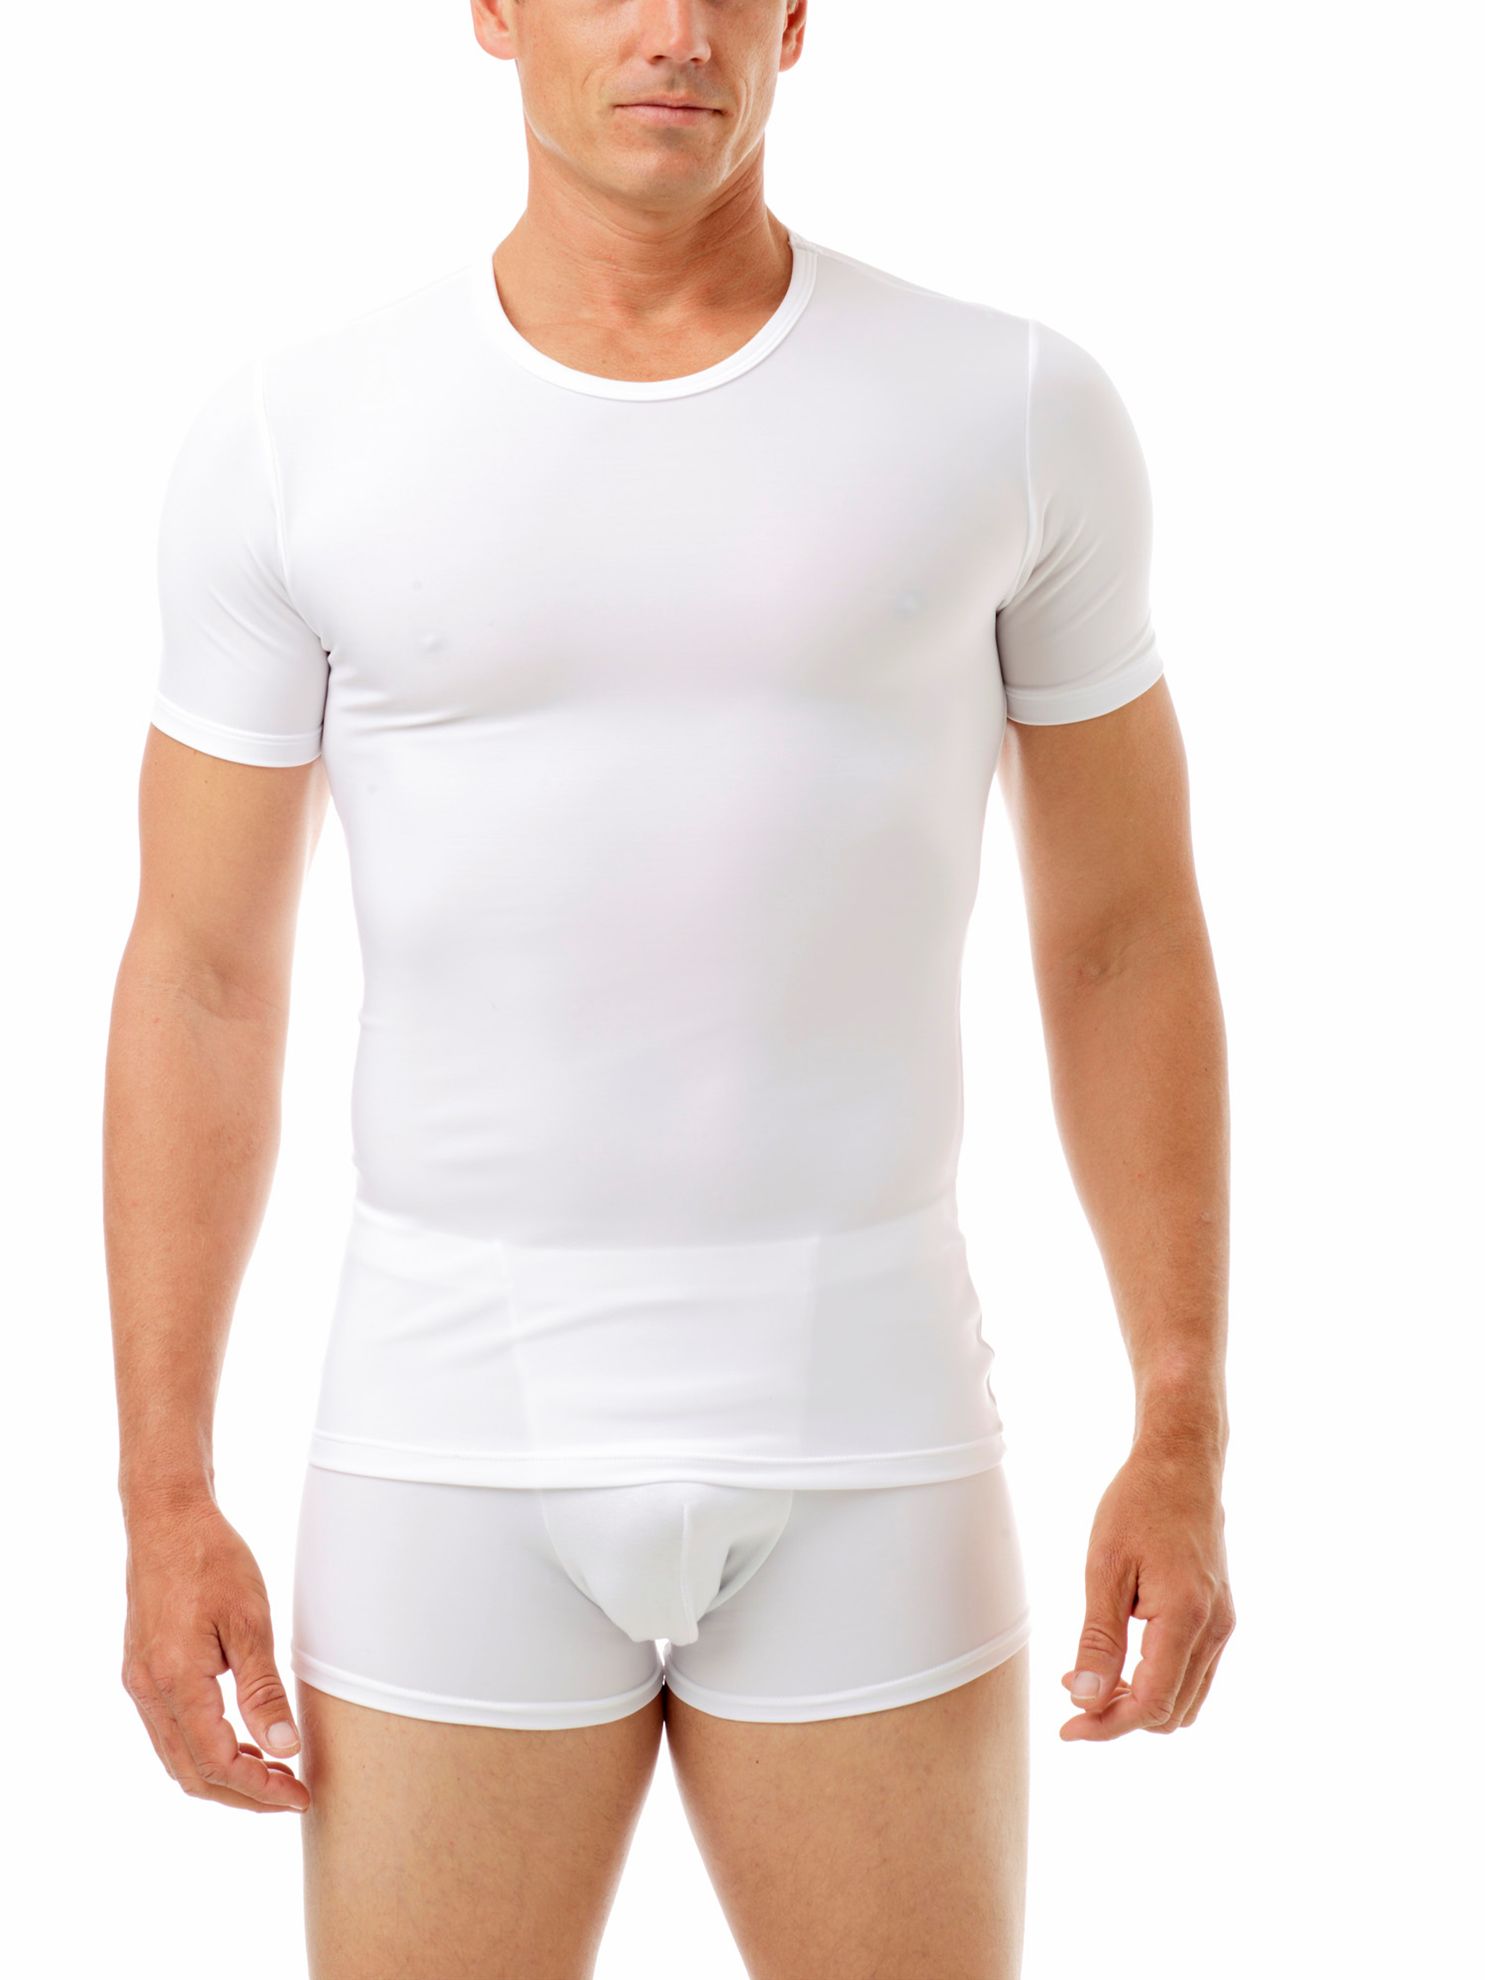 SPANX Compression Crew Neck Shirt for Men, Bright White, Small